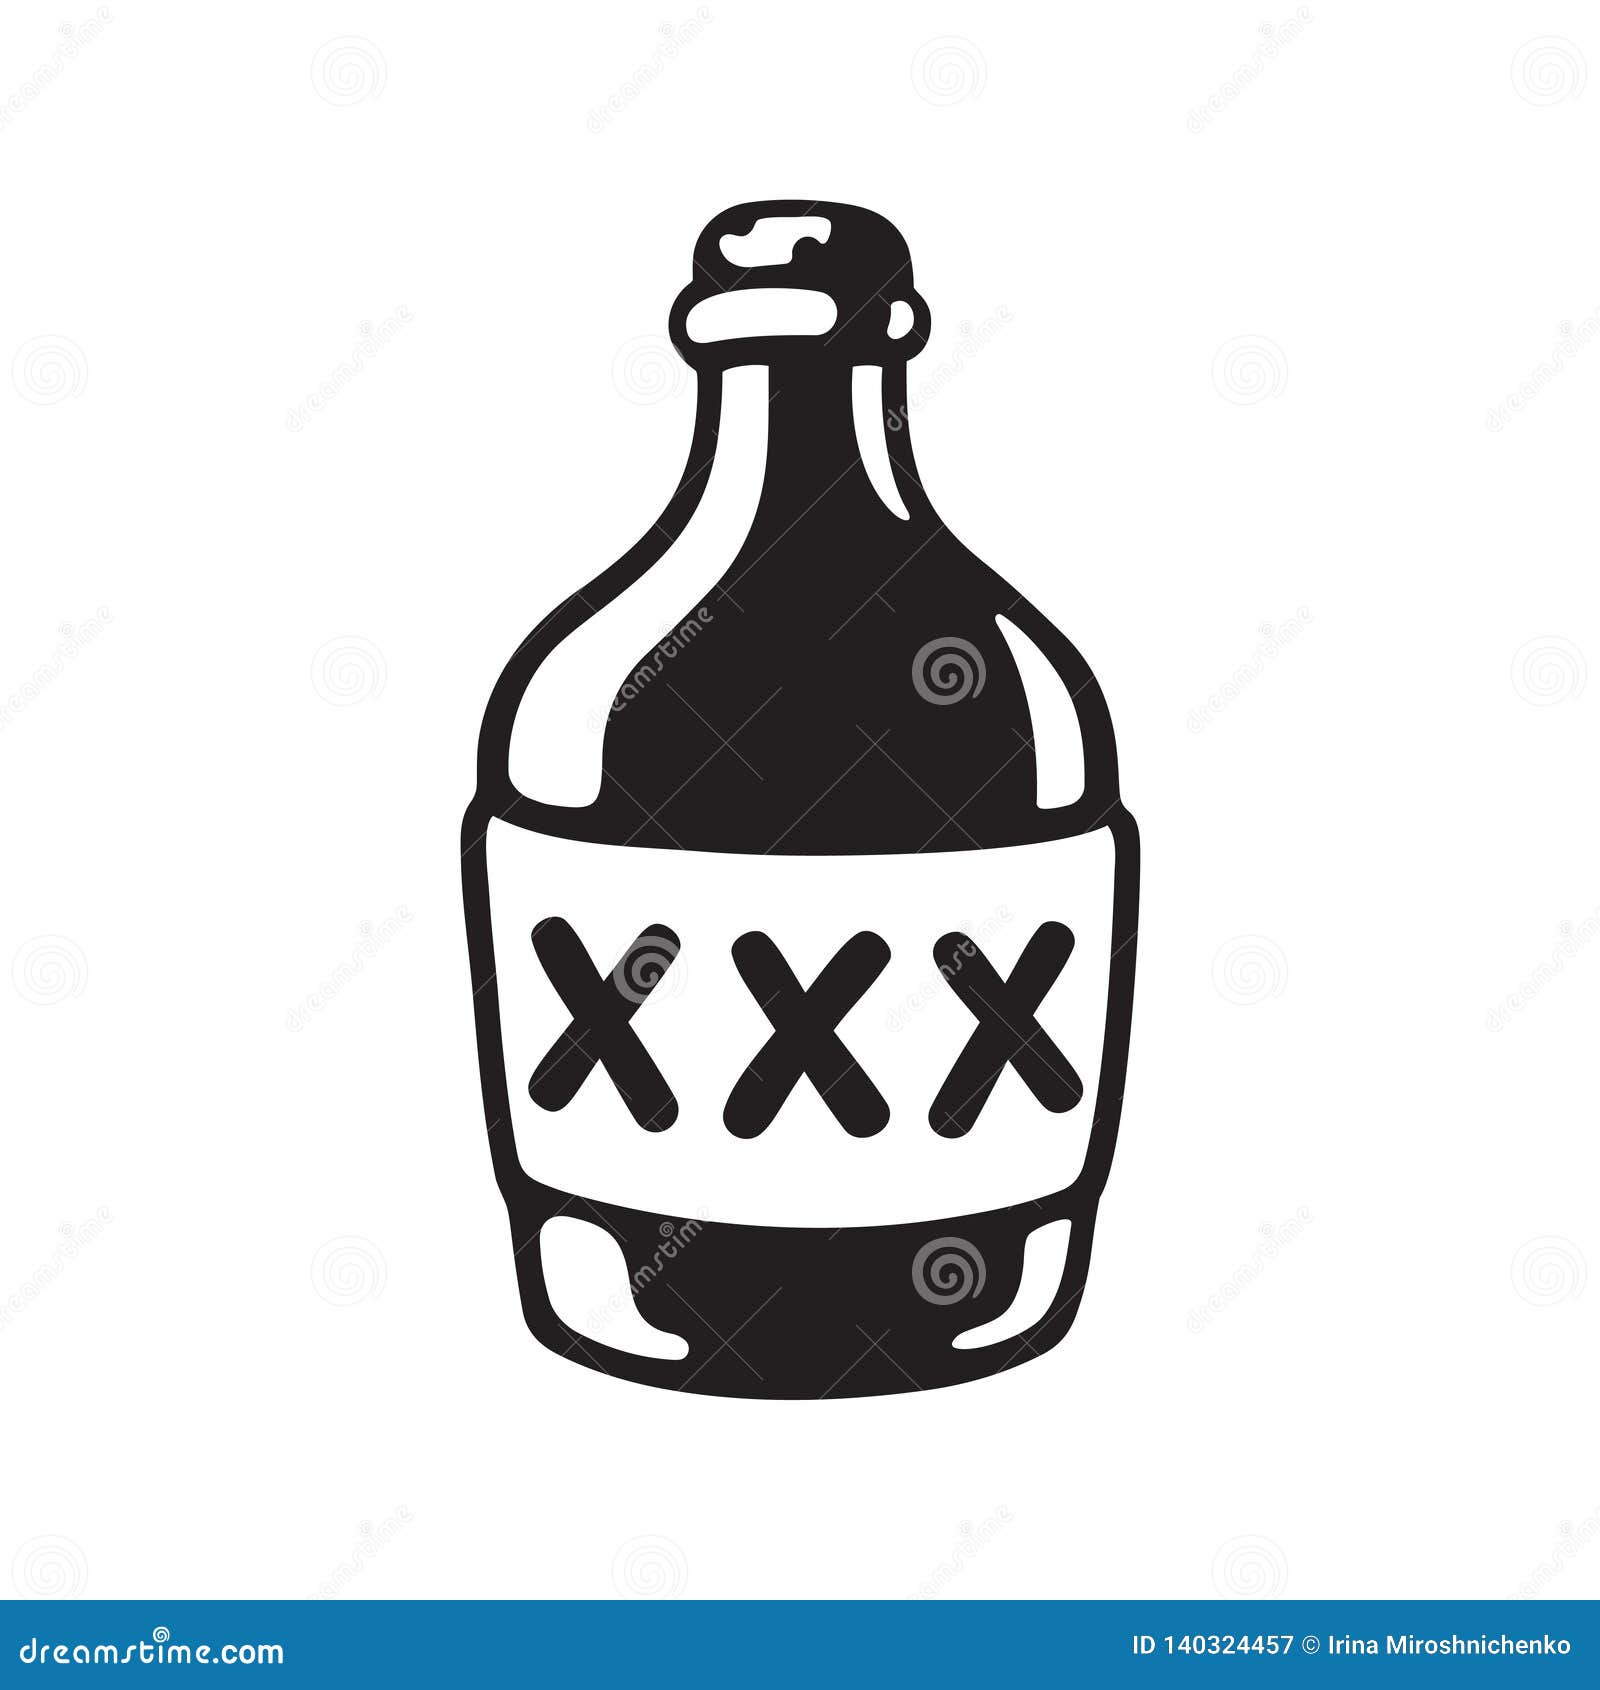 Bottle xxx